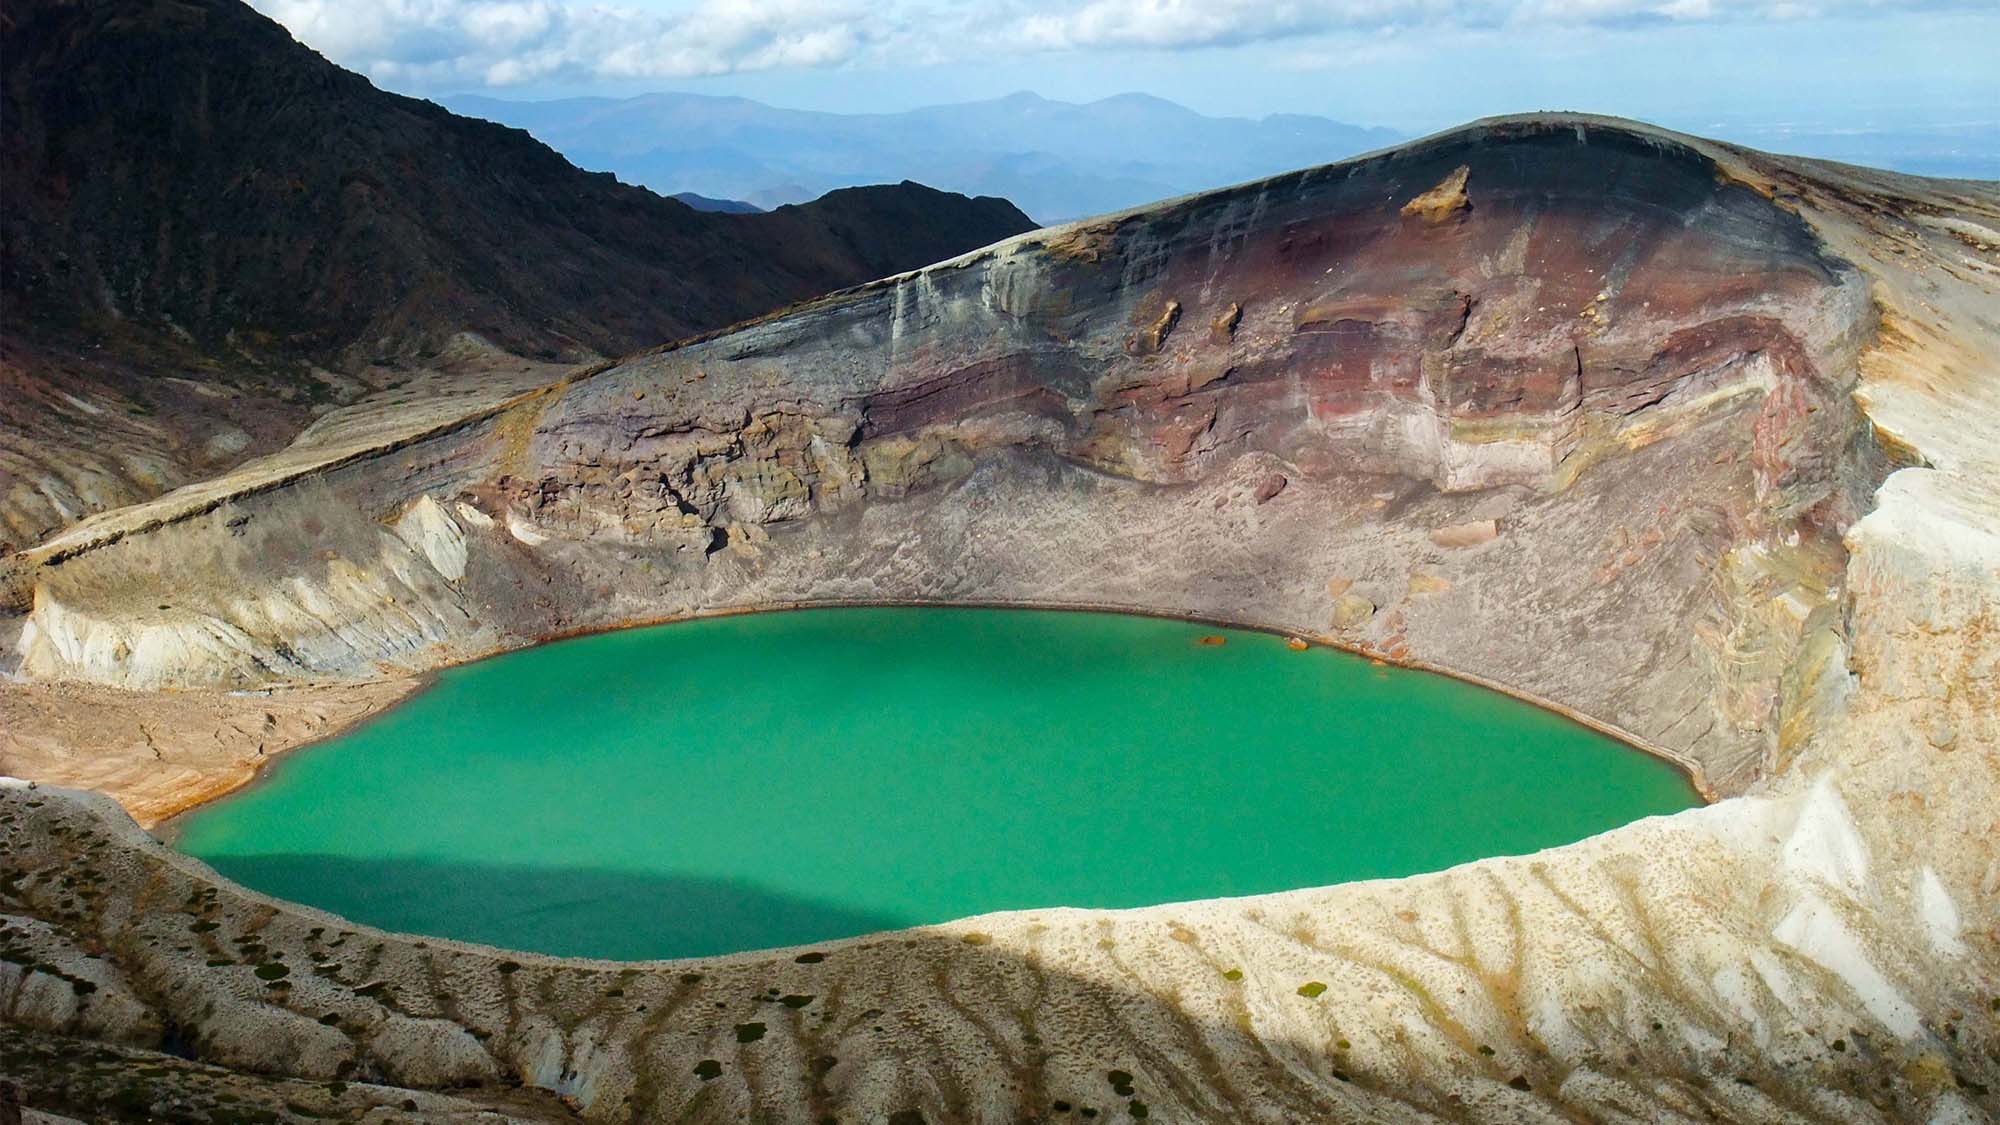 ・観光名所の「御釜」は噴火でできた窪地に水が溜まった火口湖